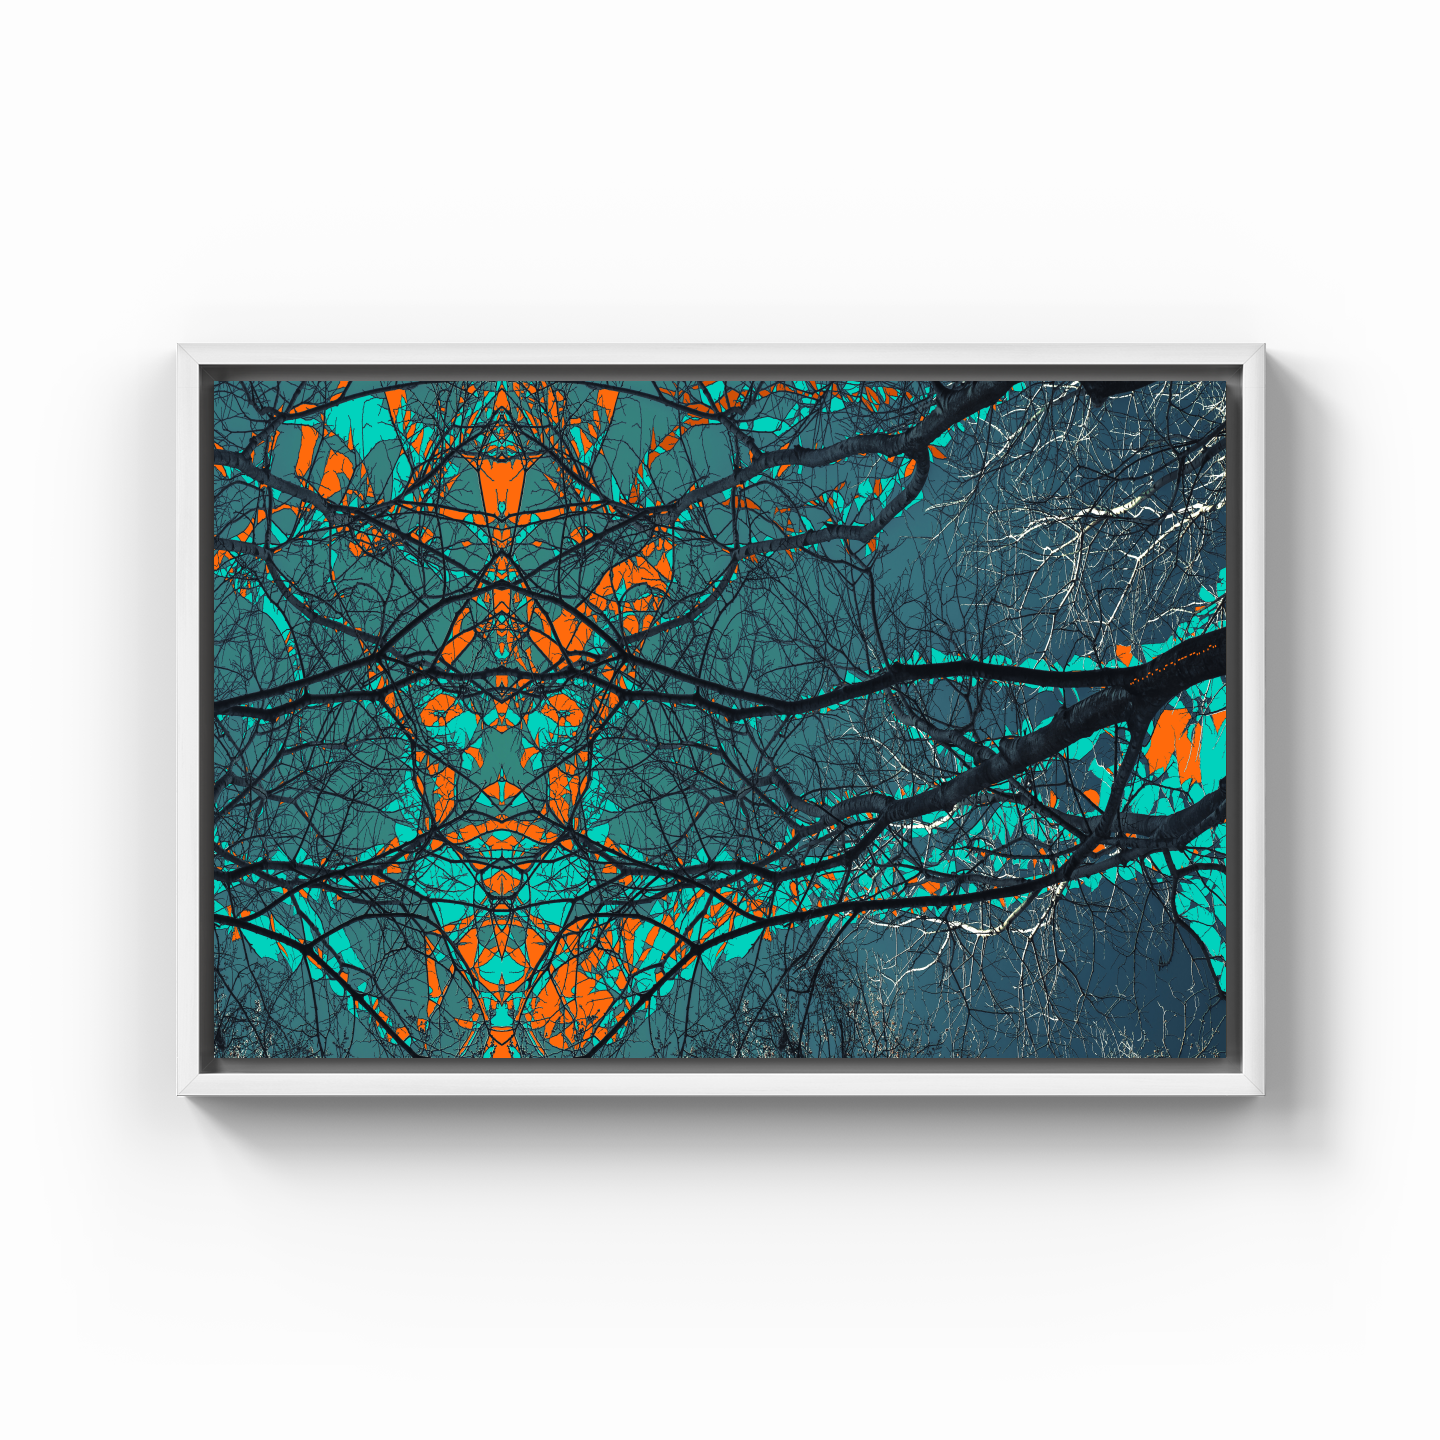 Simetri Ağaç Dal Orman Ekspresyonist Abstrakt Manzara No 18 - Kanvas Tablo